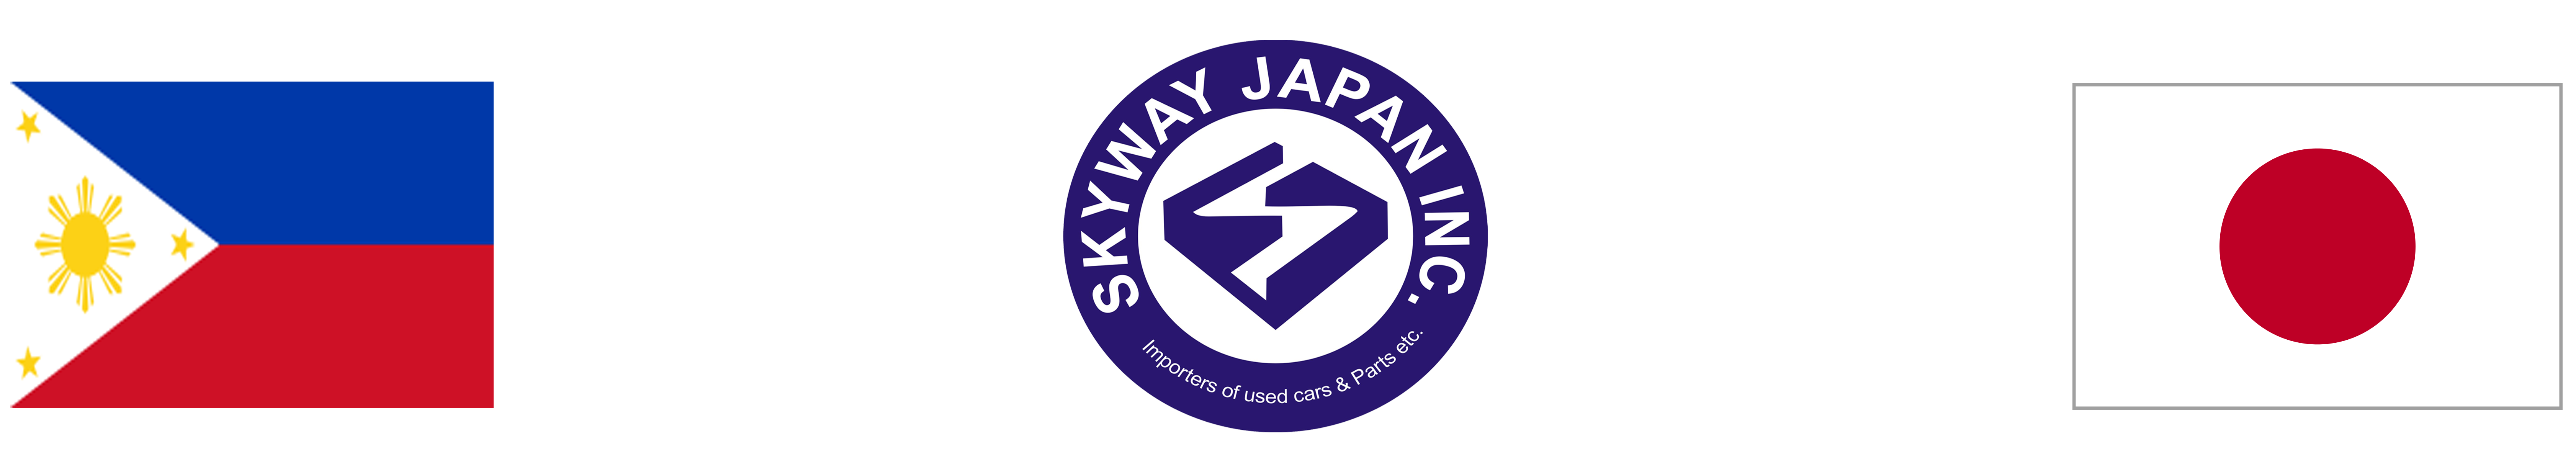 Skyway Japan